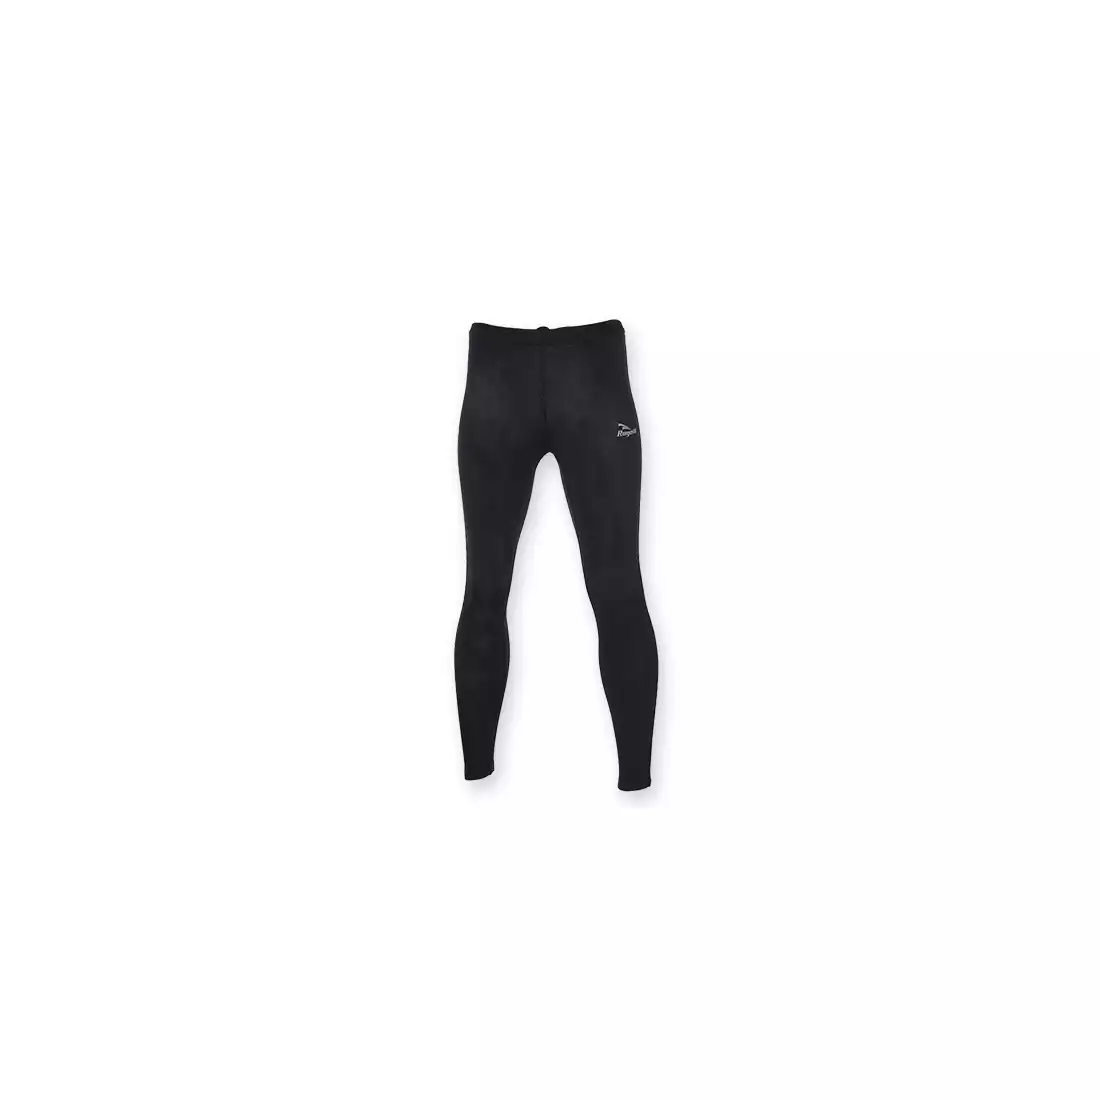 ROGELLI RUN BIXBY - męskie nieocieplane spodnie do biegania - kolor: Czarny